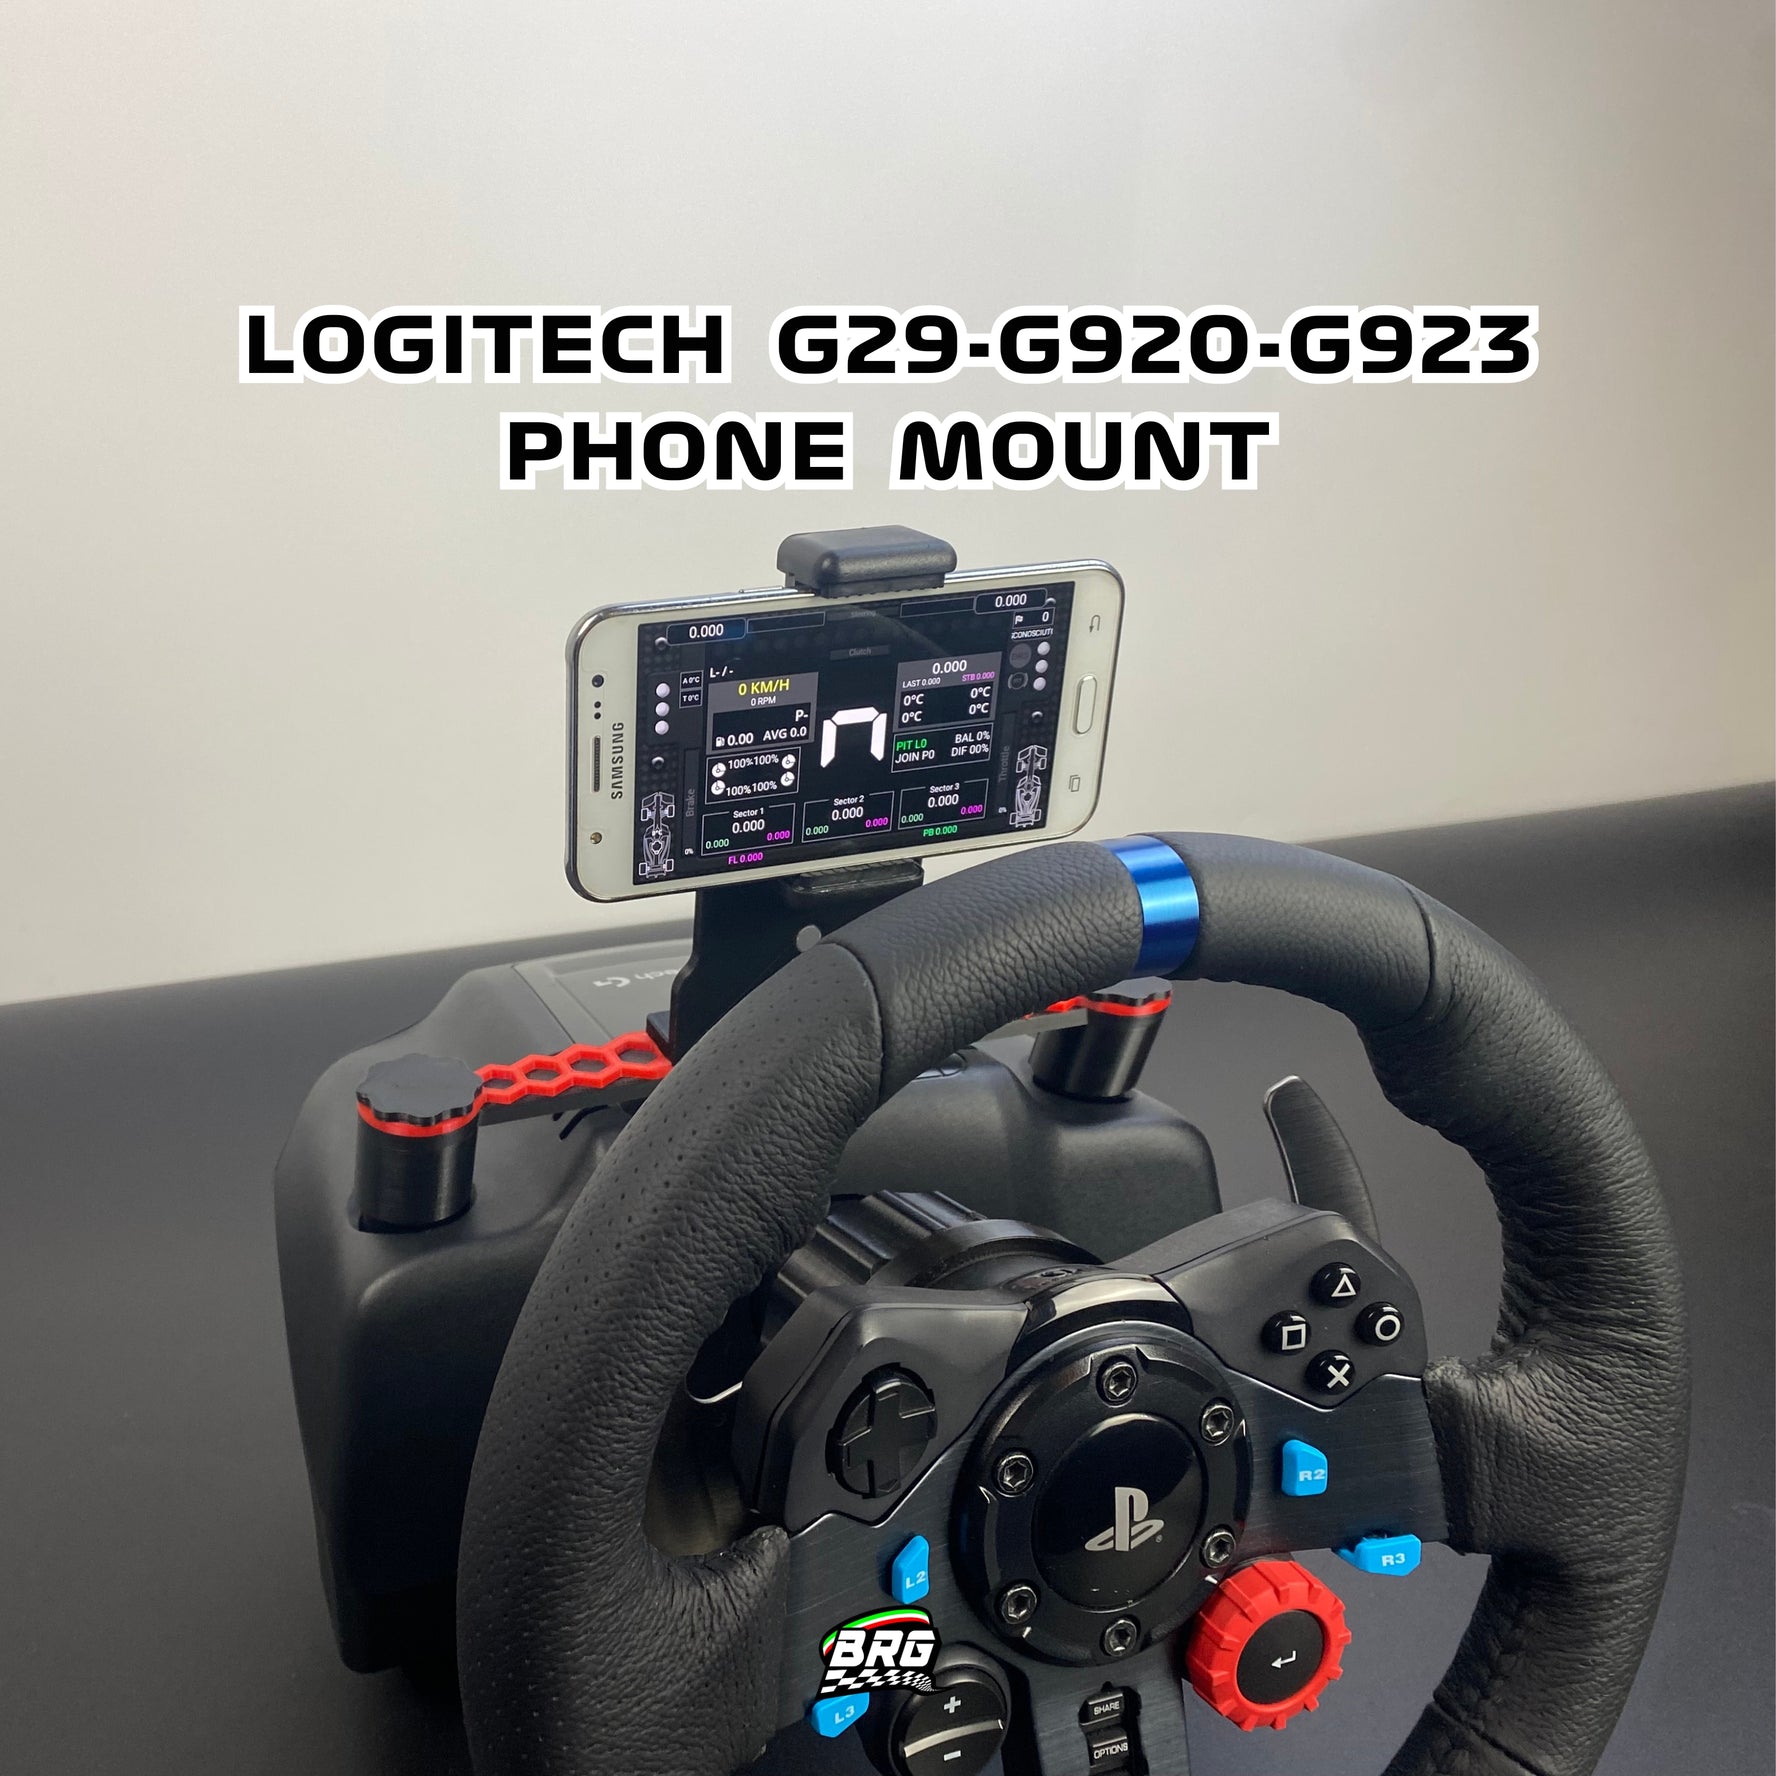 Logitech G29/G920/G923 Phone Mount